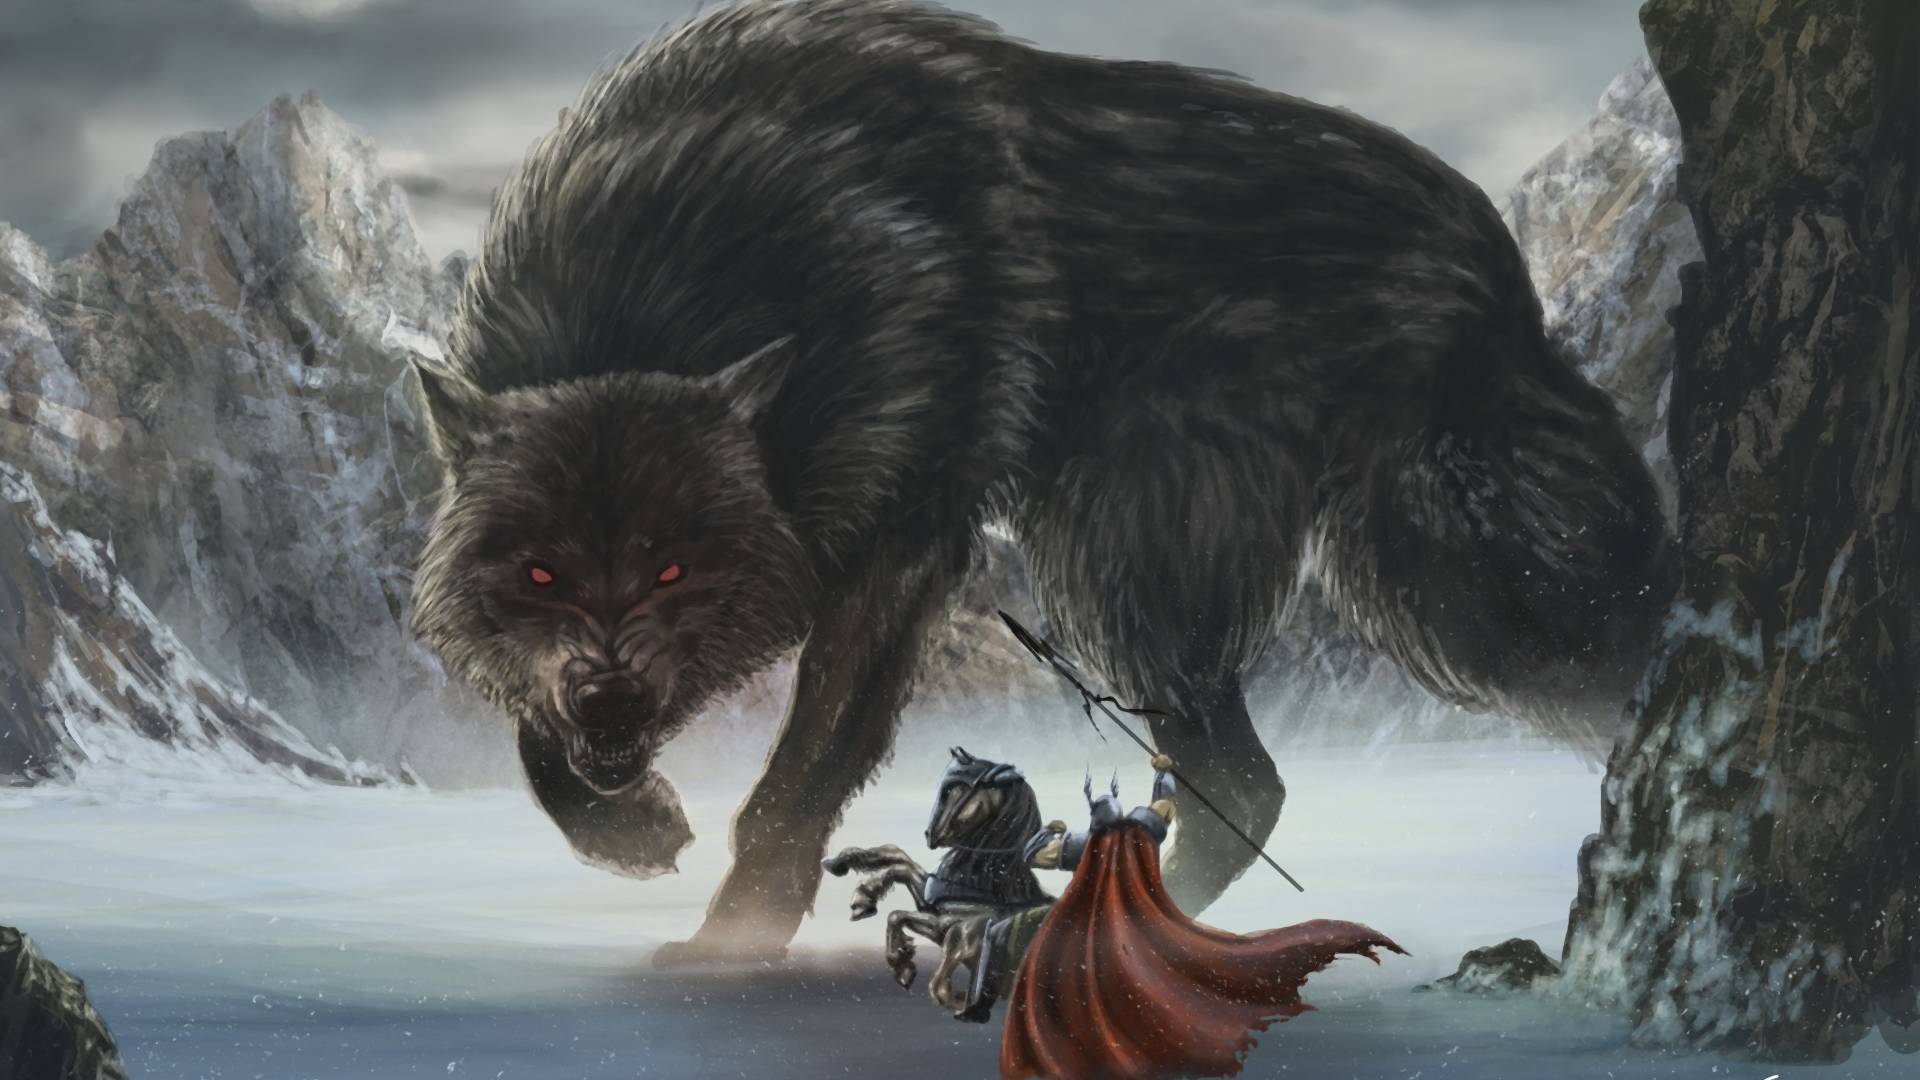 Ragnarök: ez történik pontosan a vikingek szerint a "világvége" alatt